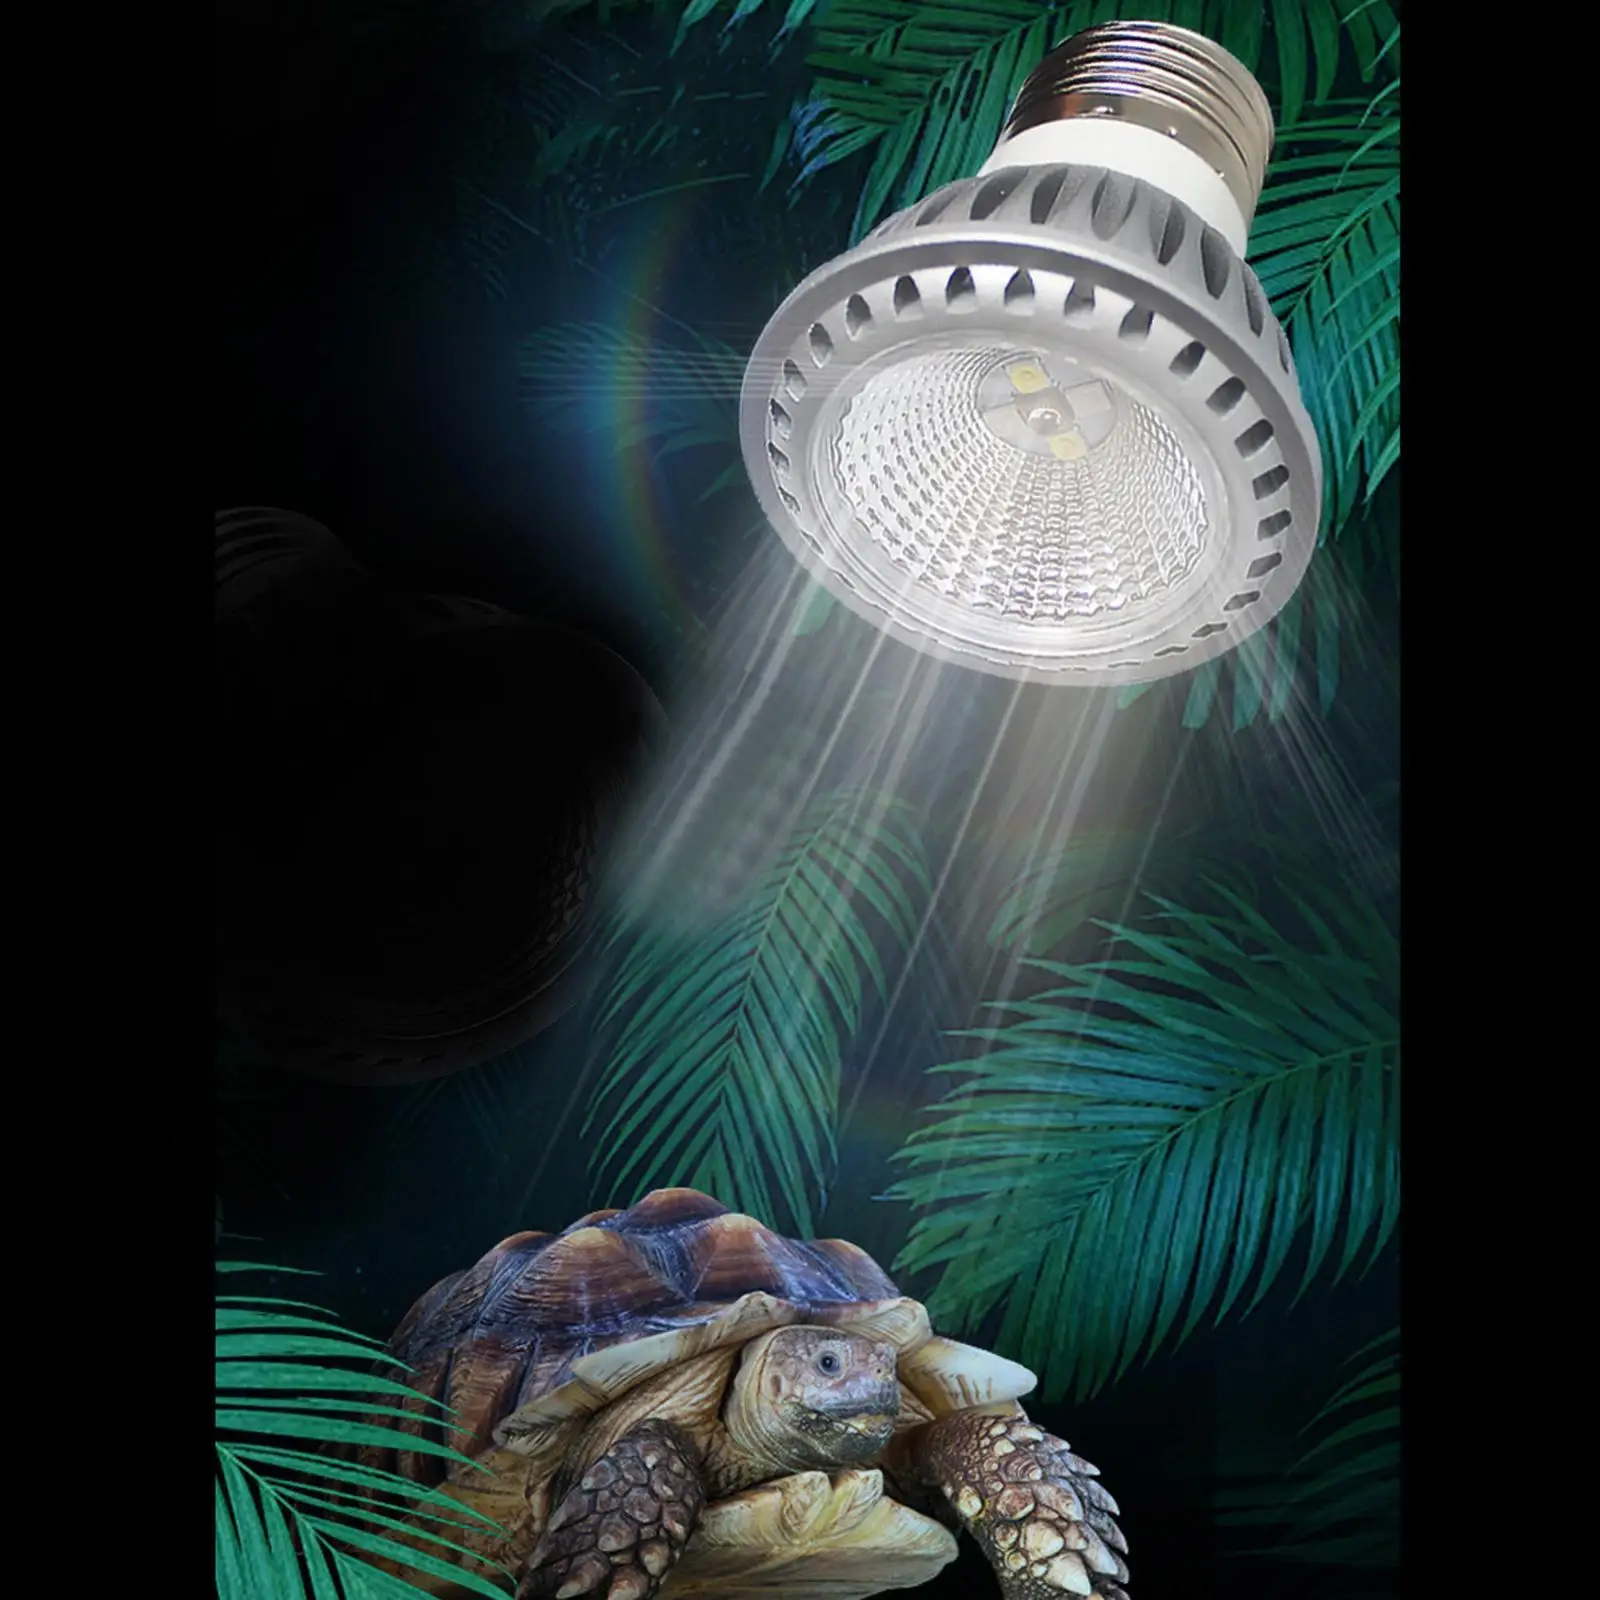 Ceramic Reptile Heat Emitter Lamp UVA UVB Bulb Heating Basking Light E27 Base for Pet Snakes Tortoise Lizards Amphibians Turtle